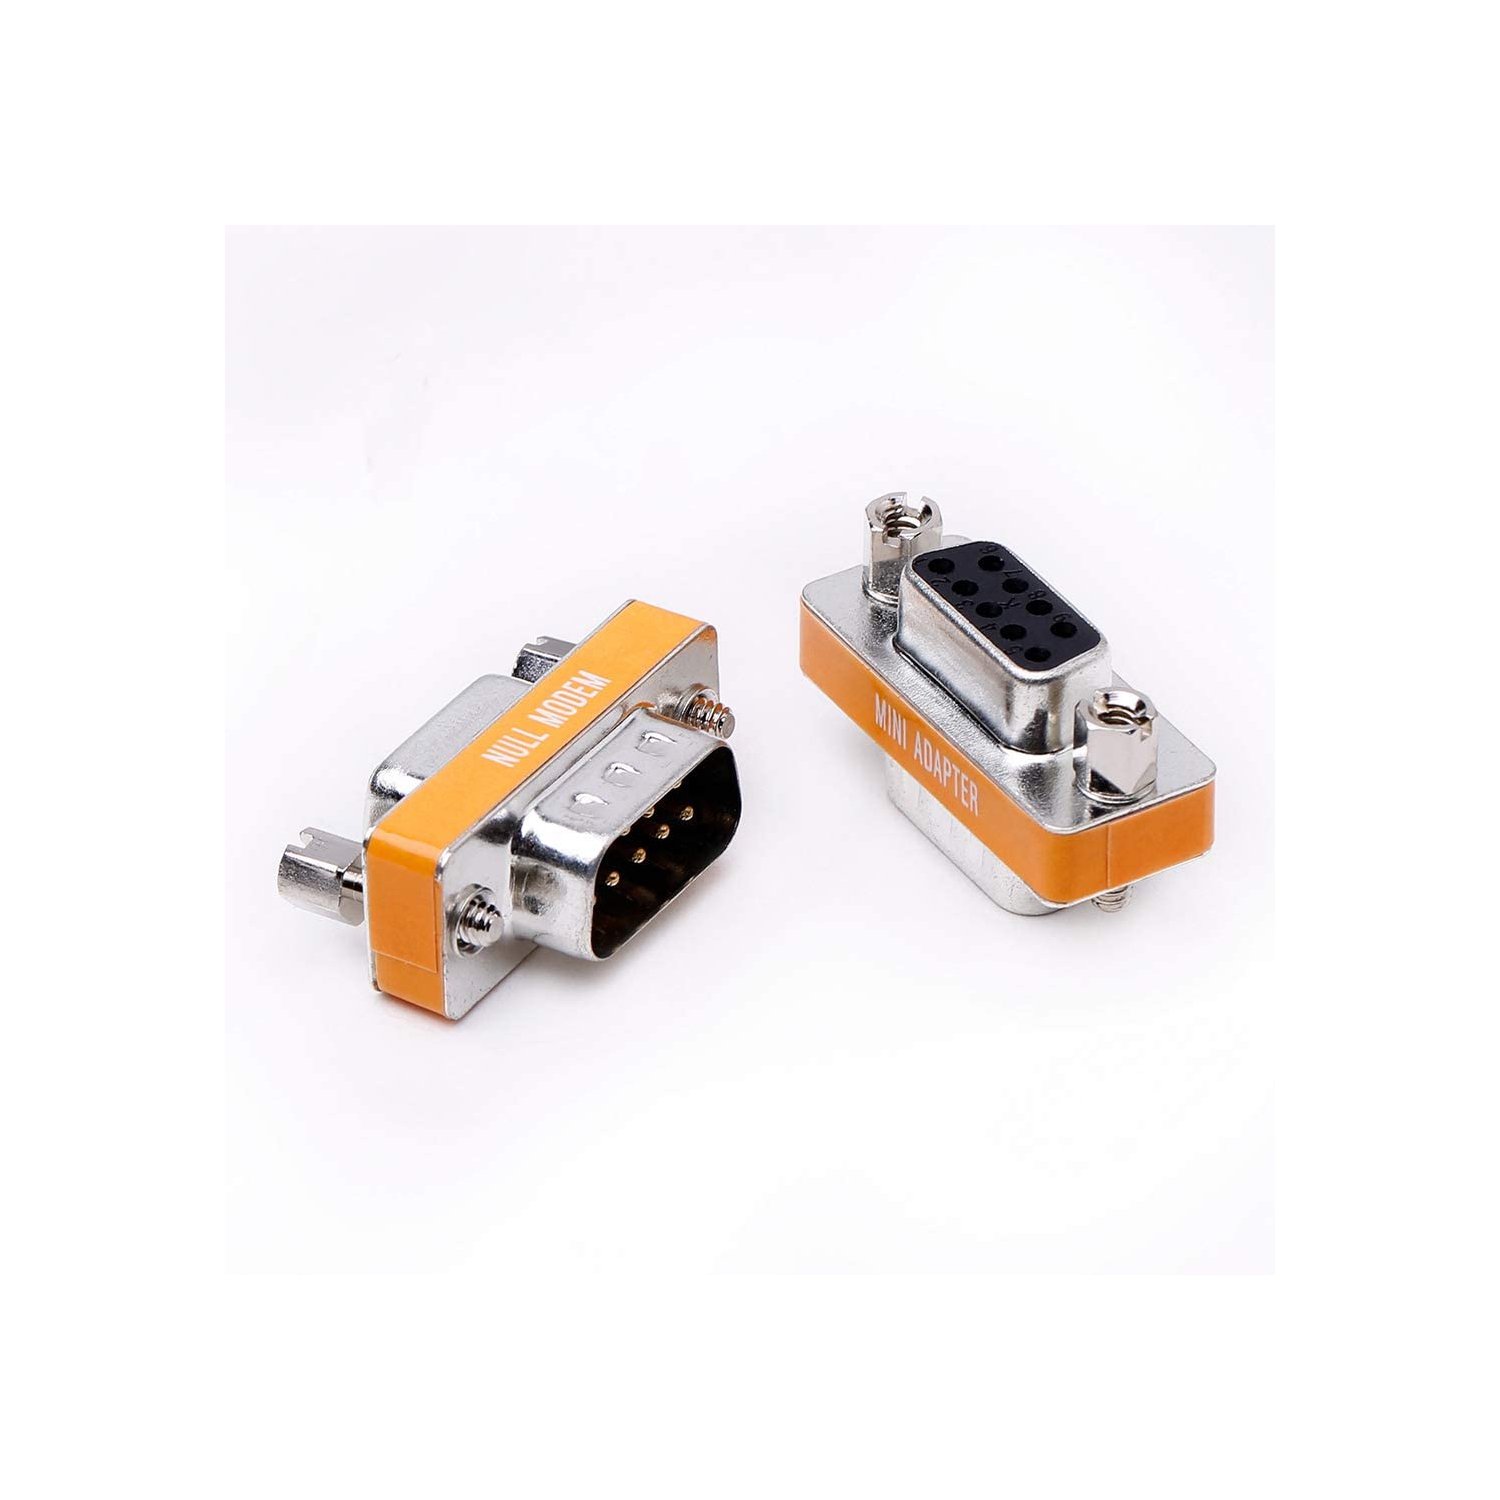 DB9 null modem male to female slimline data transfer serial port adapter 2 Pack